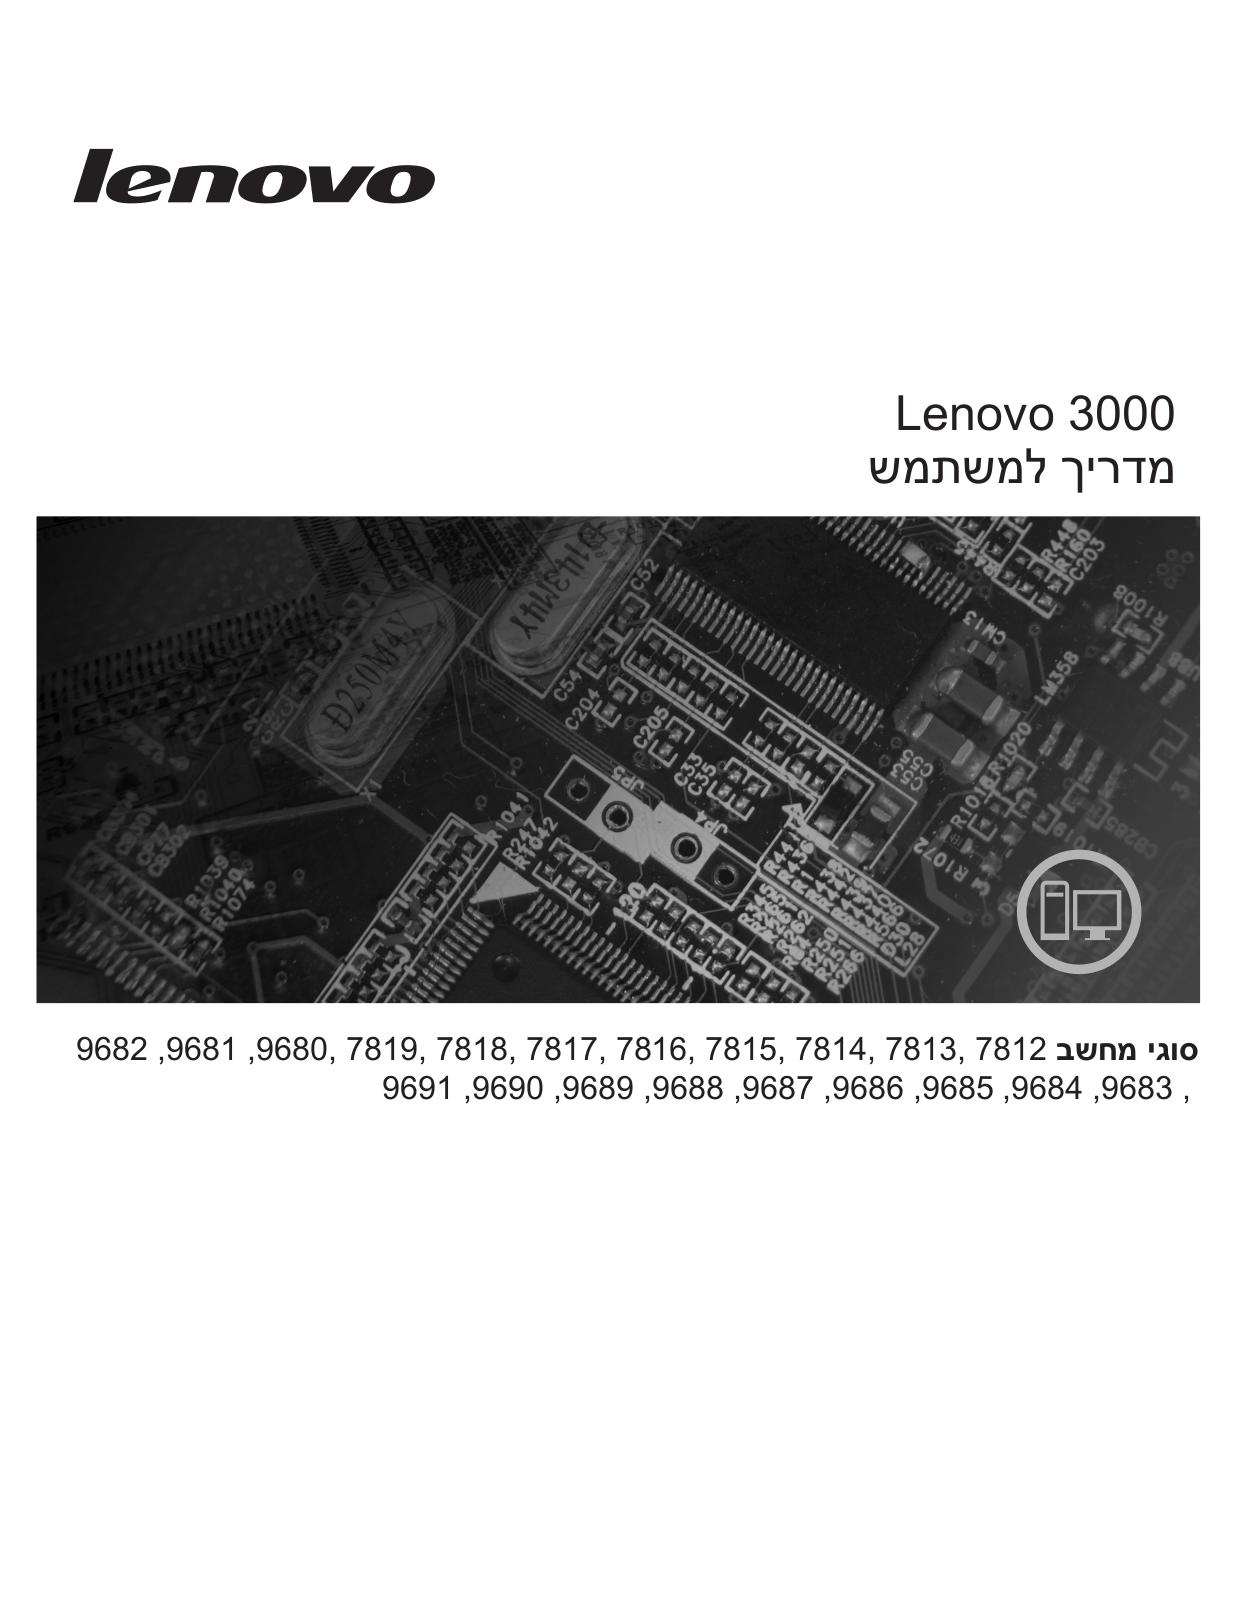 Lenovo 3000 7812, 3000 9691 User Manual